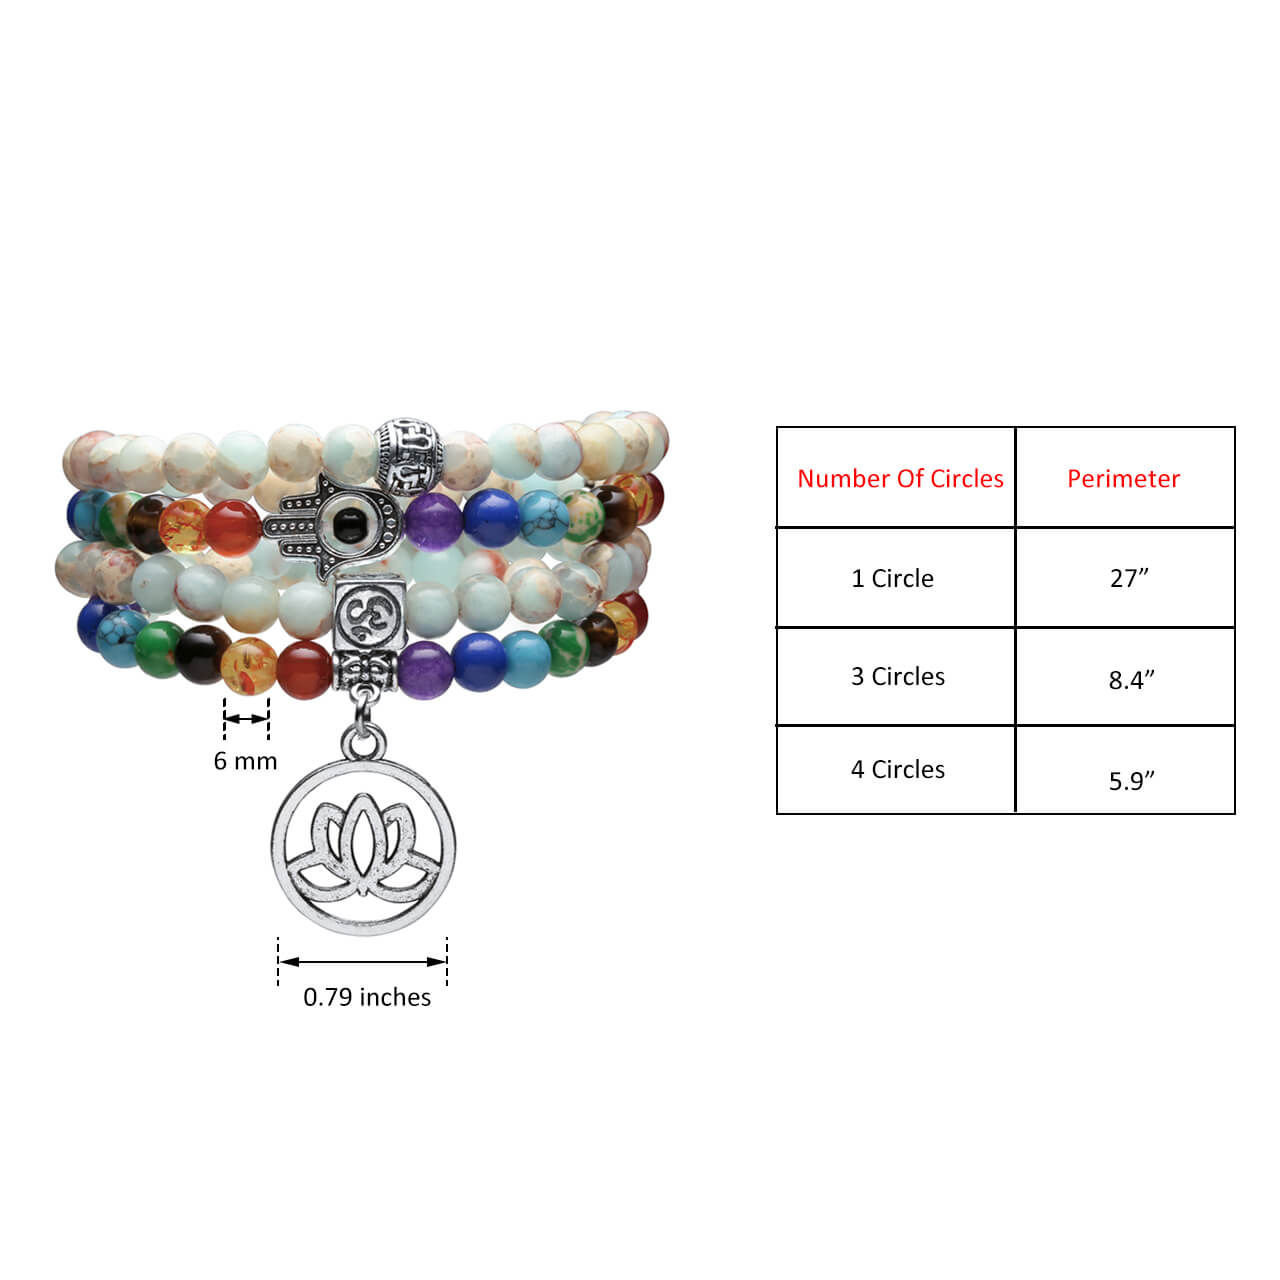 Size of prayer beads mala bracelet